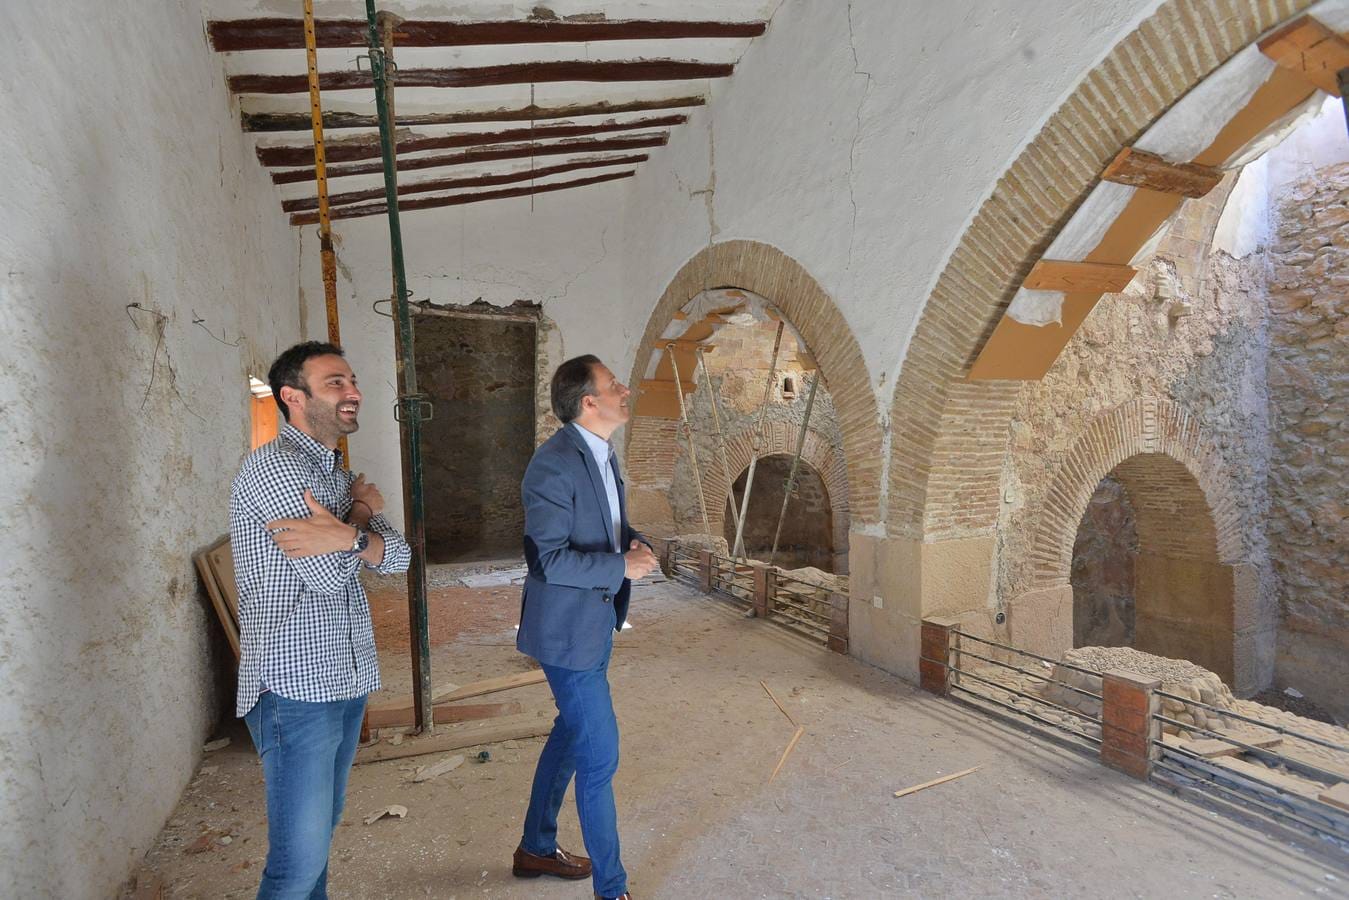 El complejo hidráulico, del siglo XVIII y abandonado desde los terremotos, será restaurado y podrá visitarse como museo